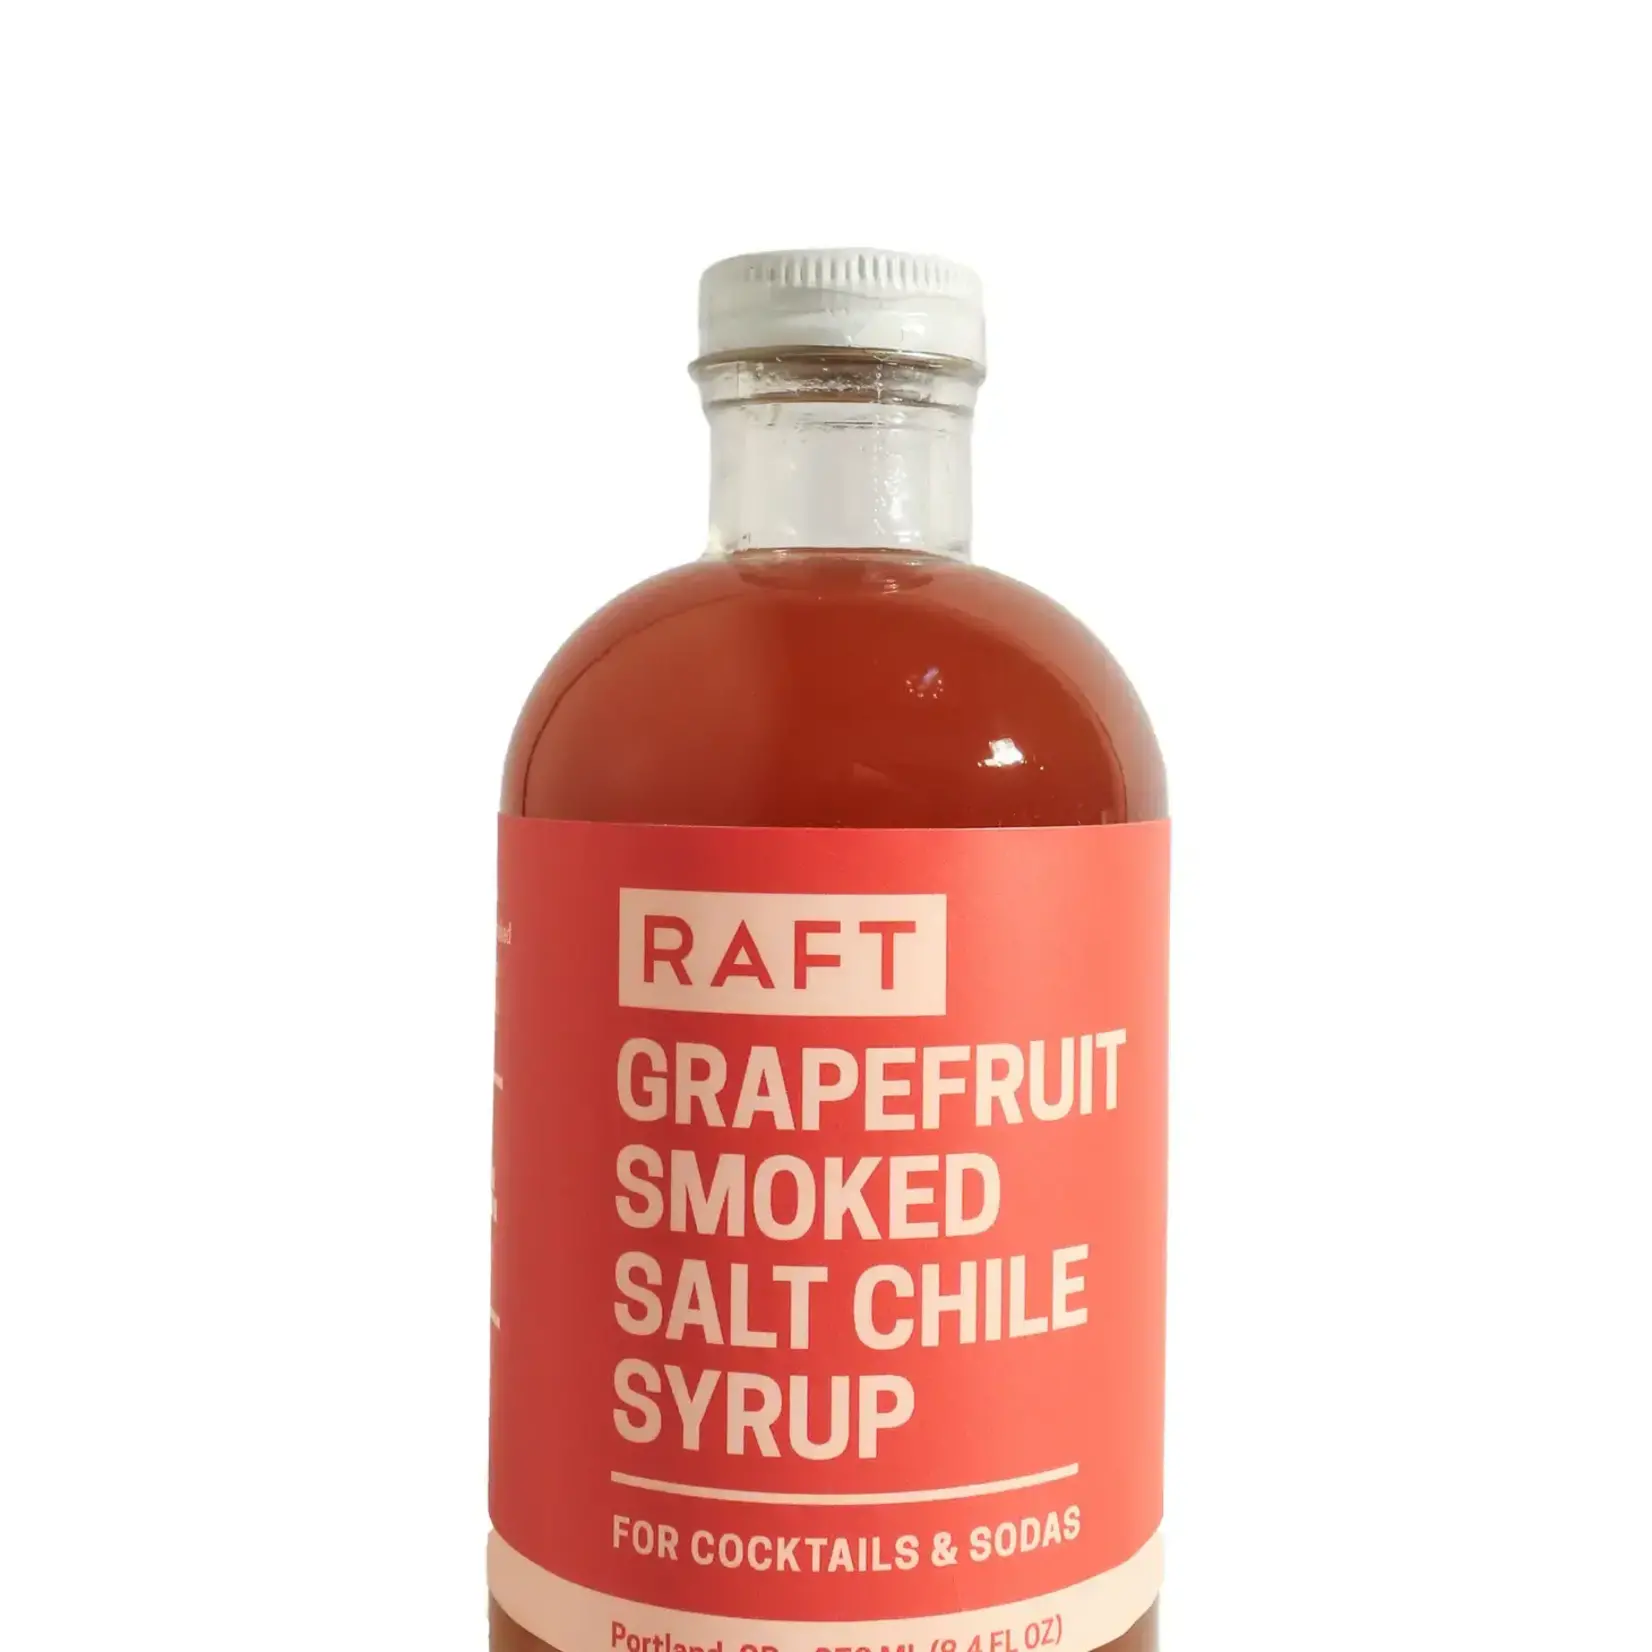 Raft Grapefruit Chile and Smoked Salt Syrup